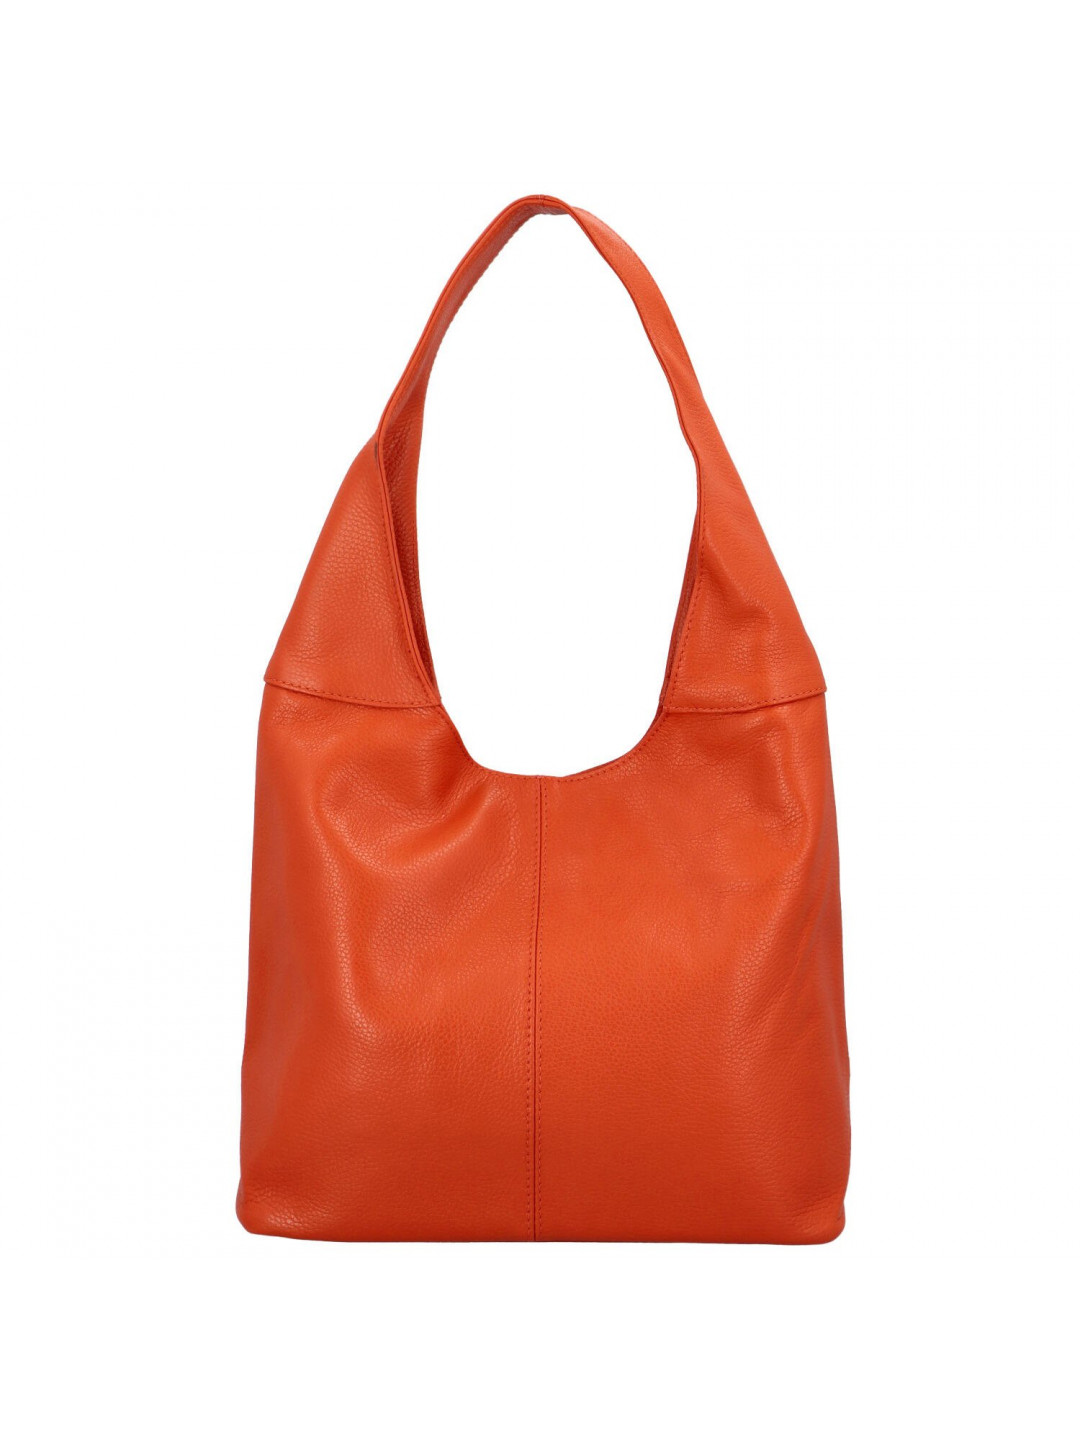 Velká dámská kožená kabelka Hayley oranžová